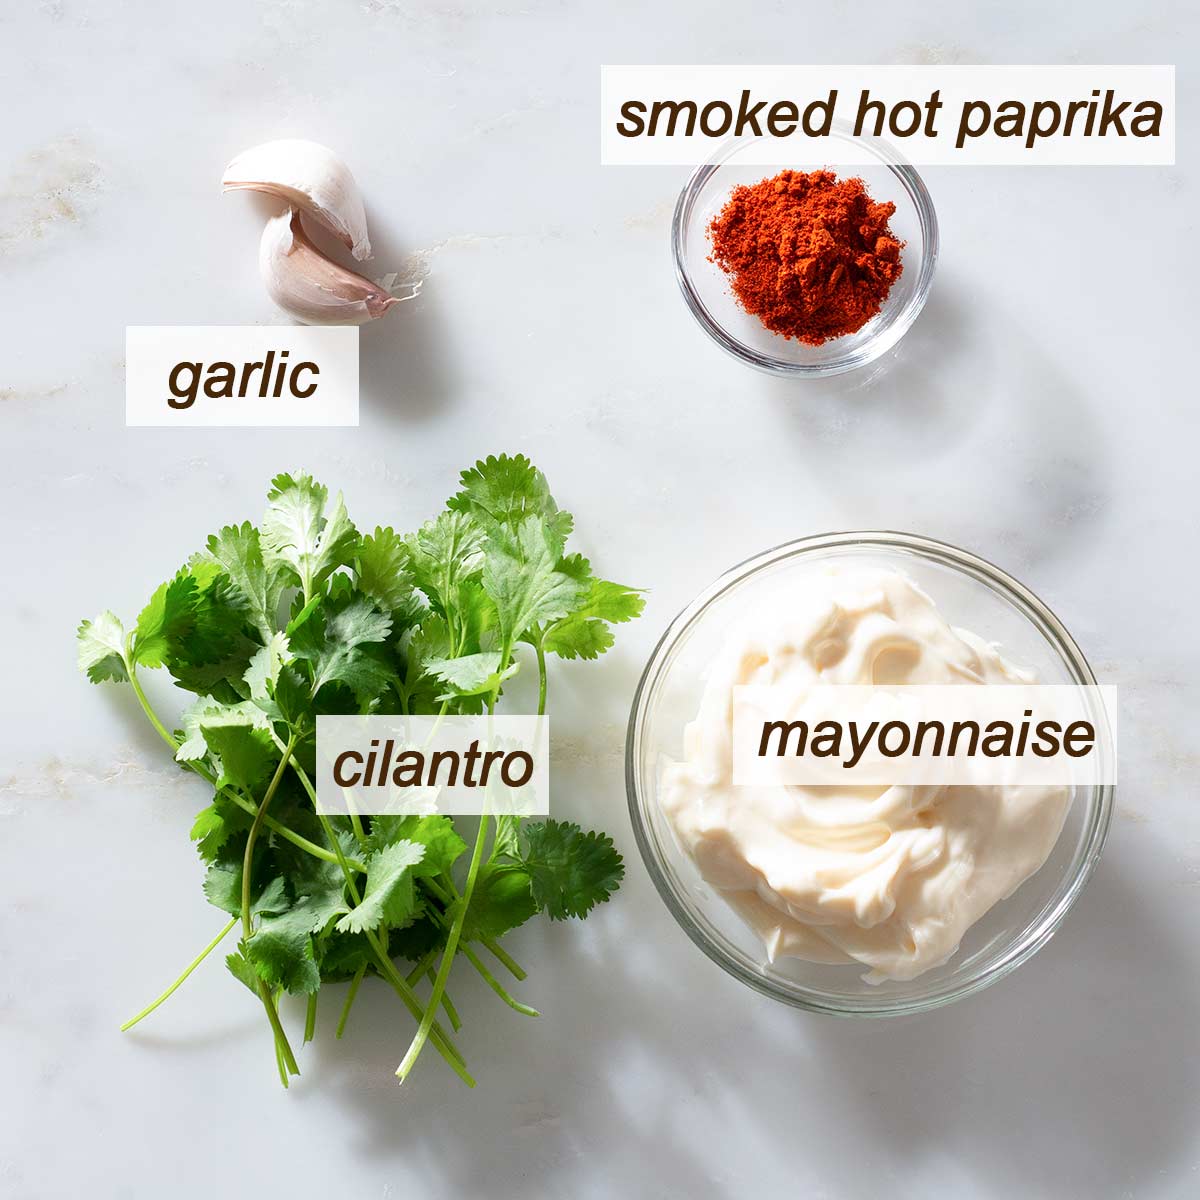 Garlic, cilantro, smoked paprika and a bowl of mayonnaise.